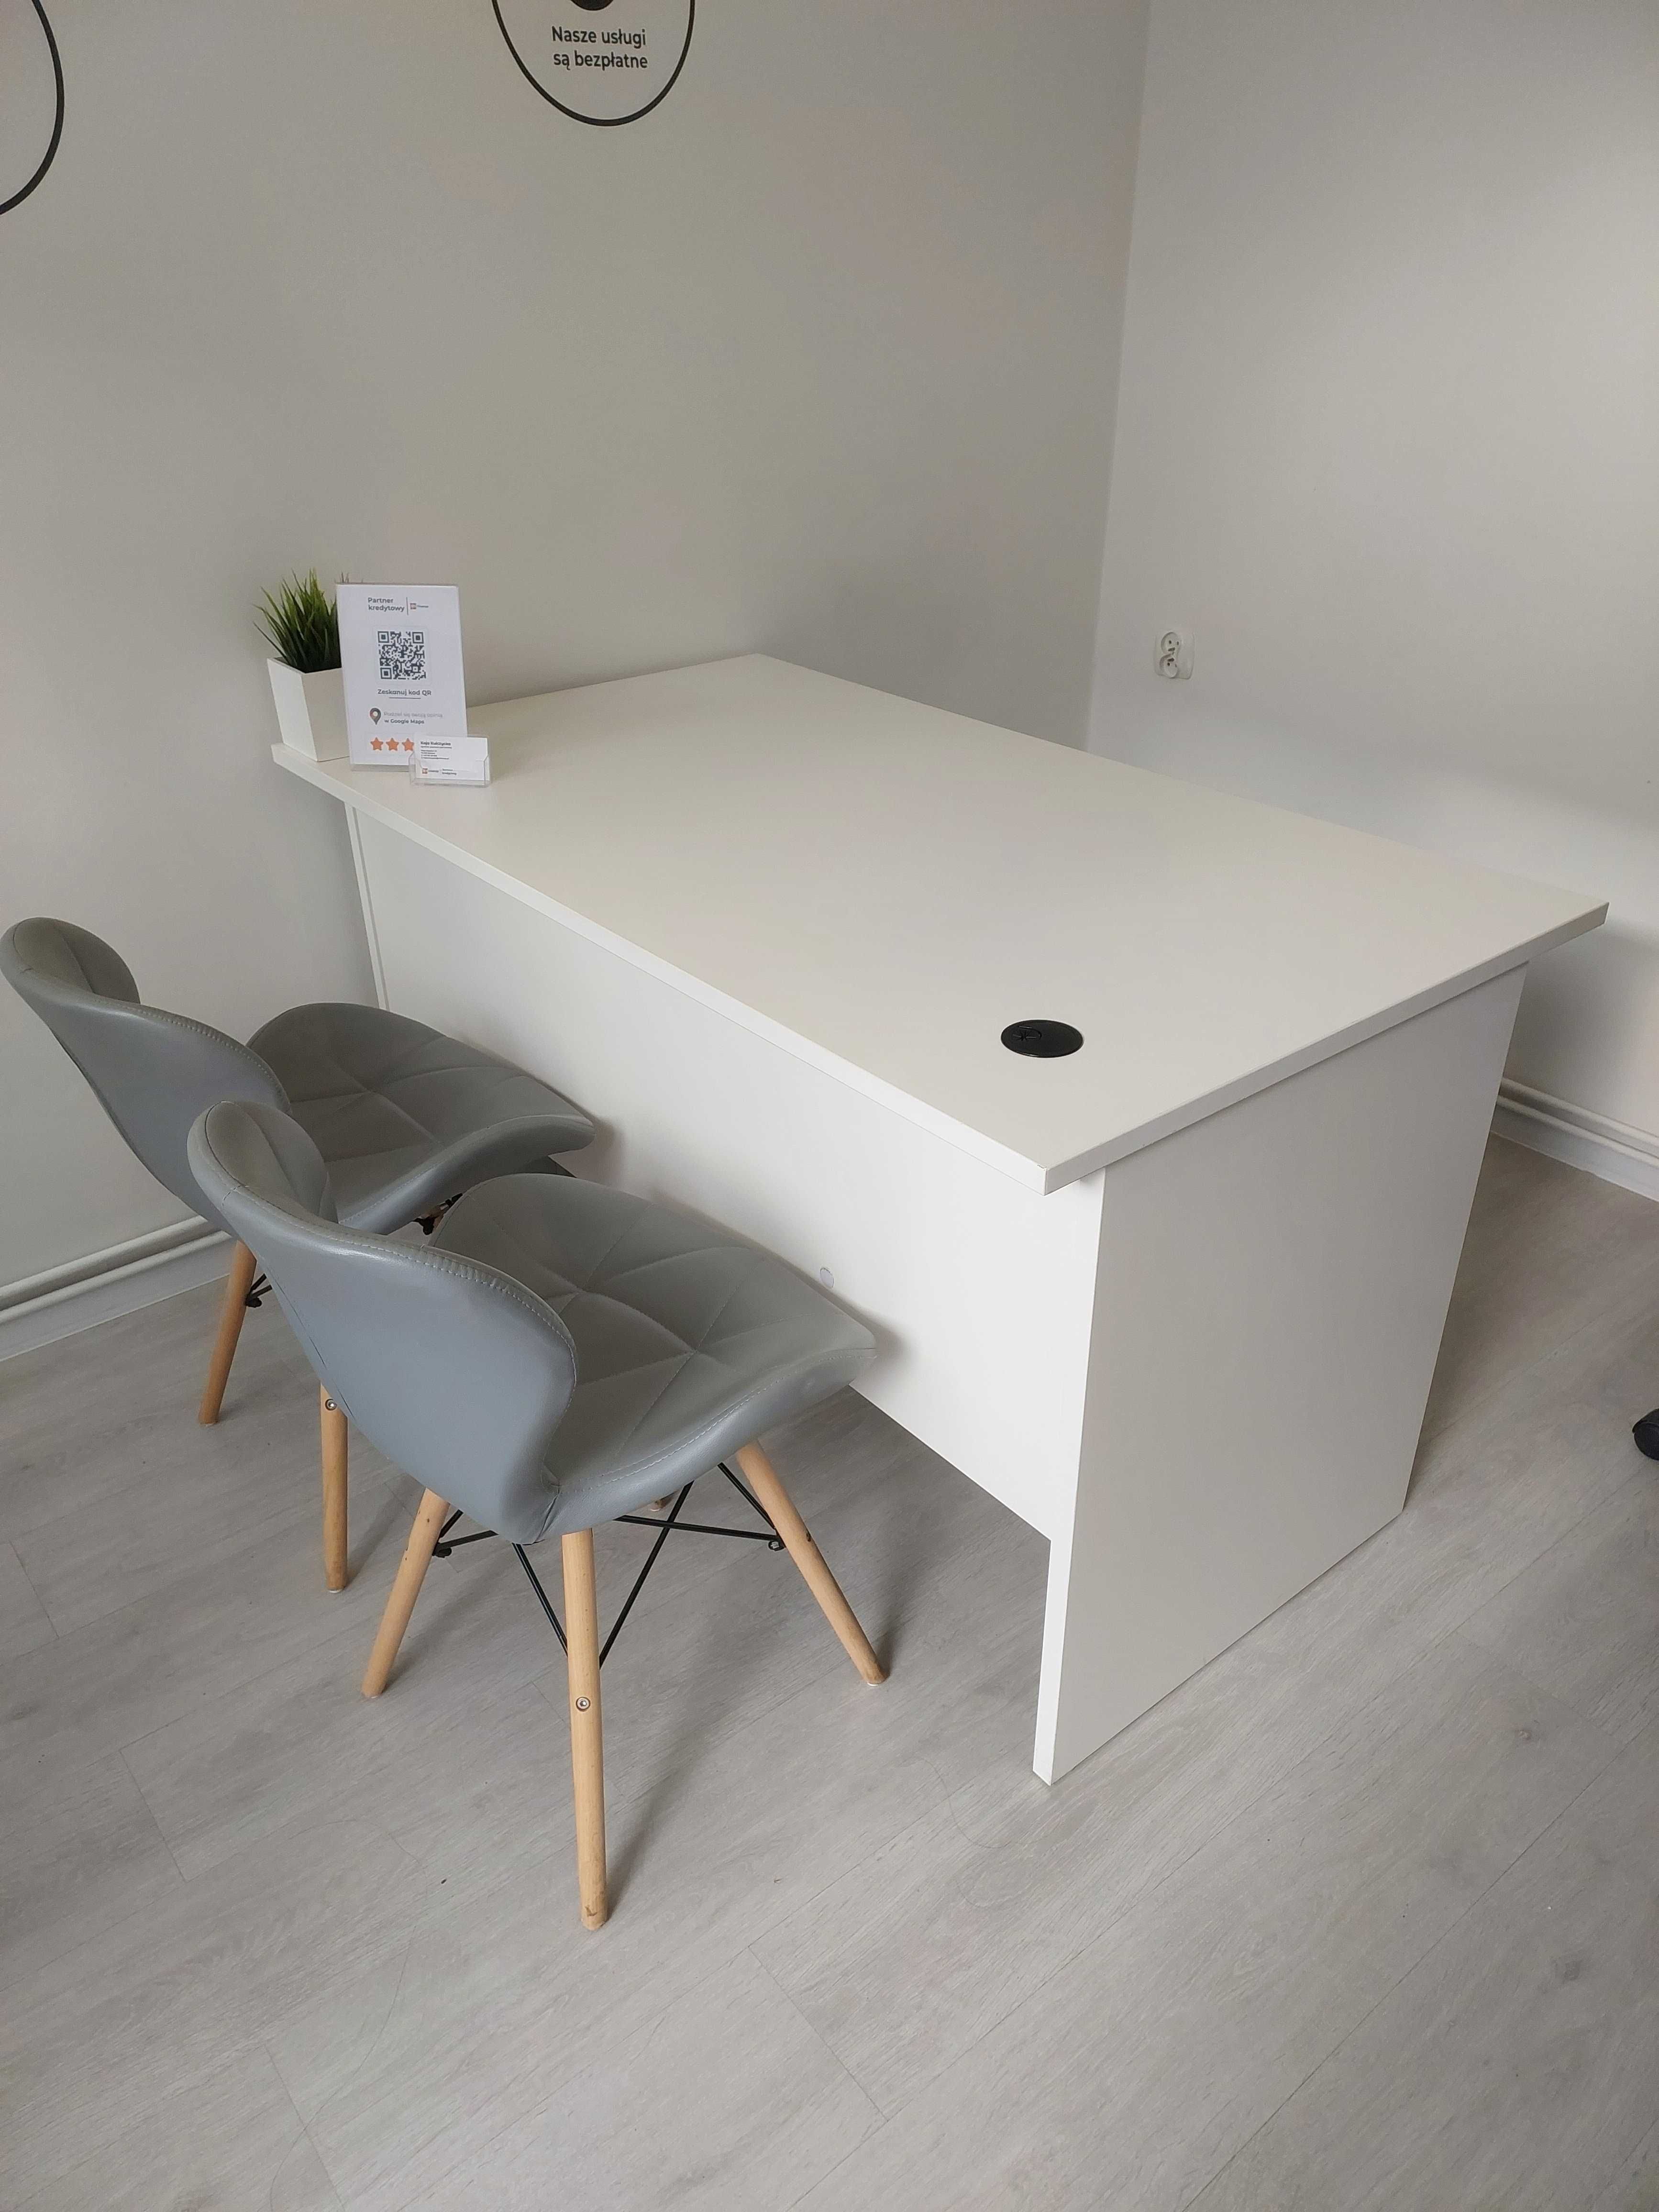 białe biurko 140 na 80 cm duże do pokoju dla dziecka do biura